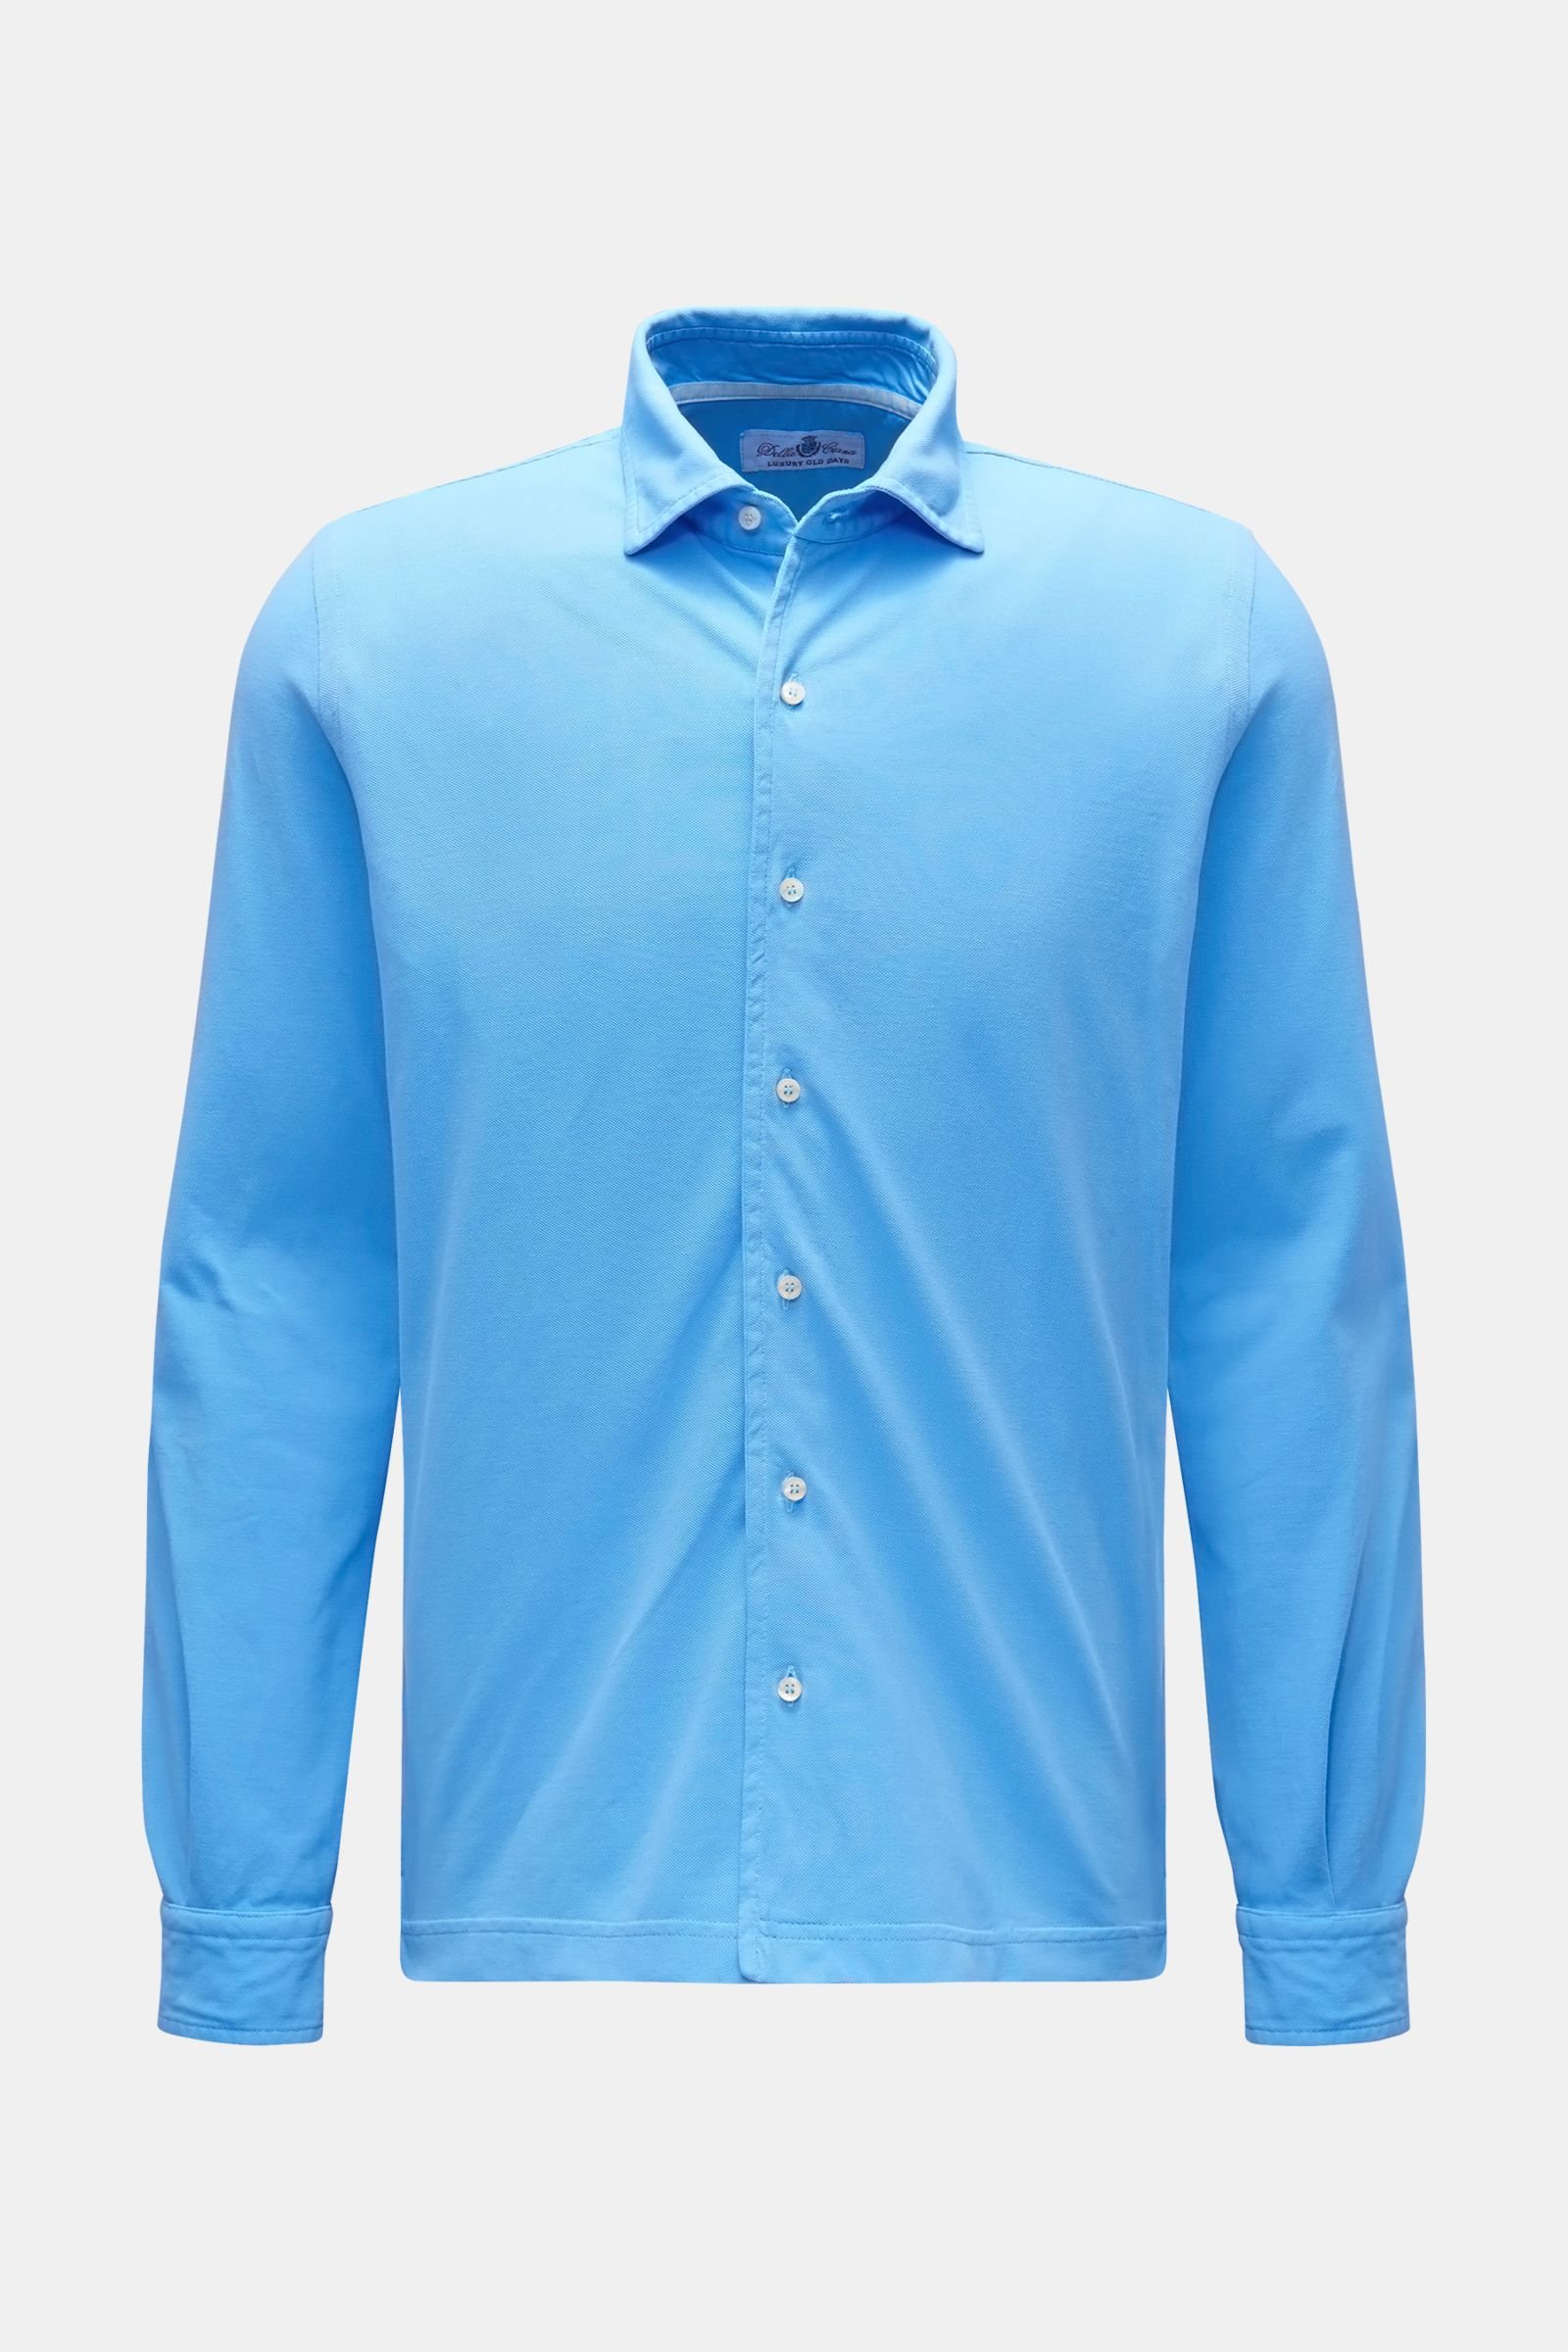 Piqué shirt shark collar blue